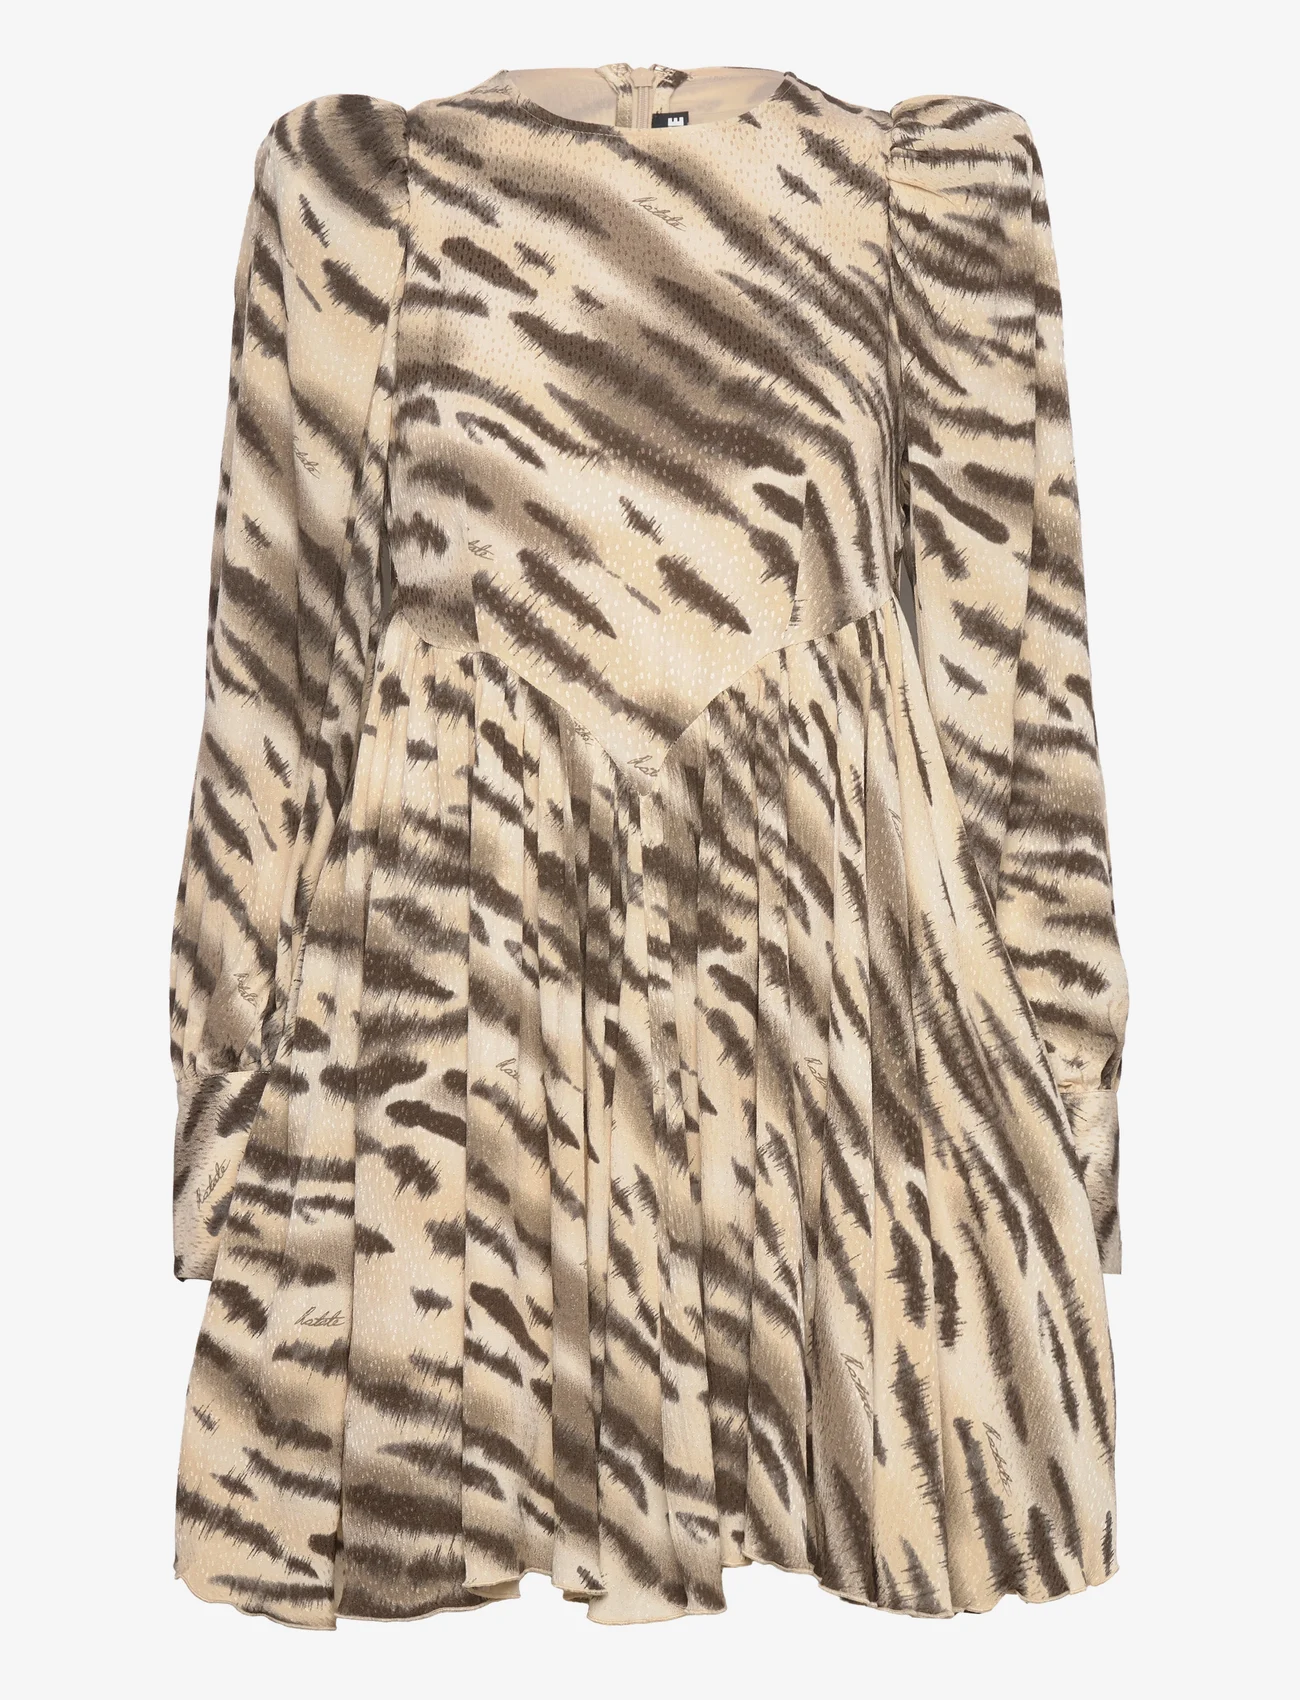 ROTATE Birger Christensen - Light Jacquard Mini Dress - odzież imprezowa w cenach outletowych - putty beige comb. - 0